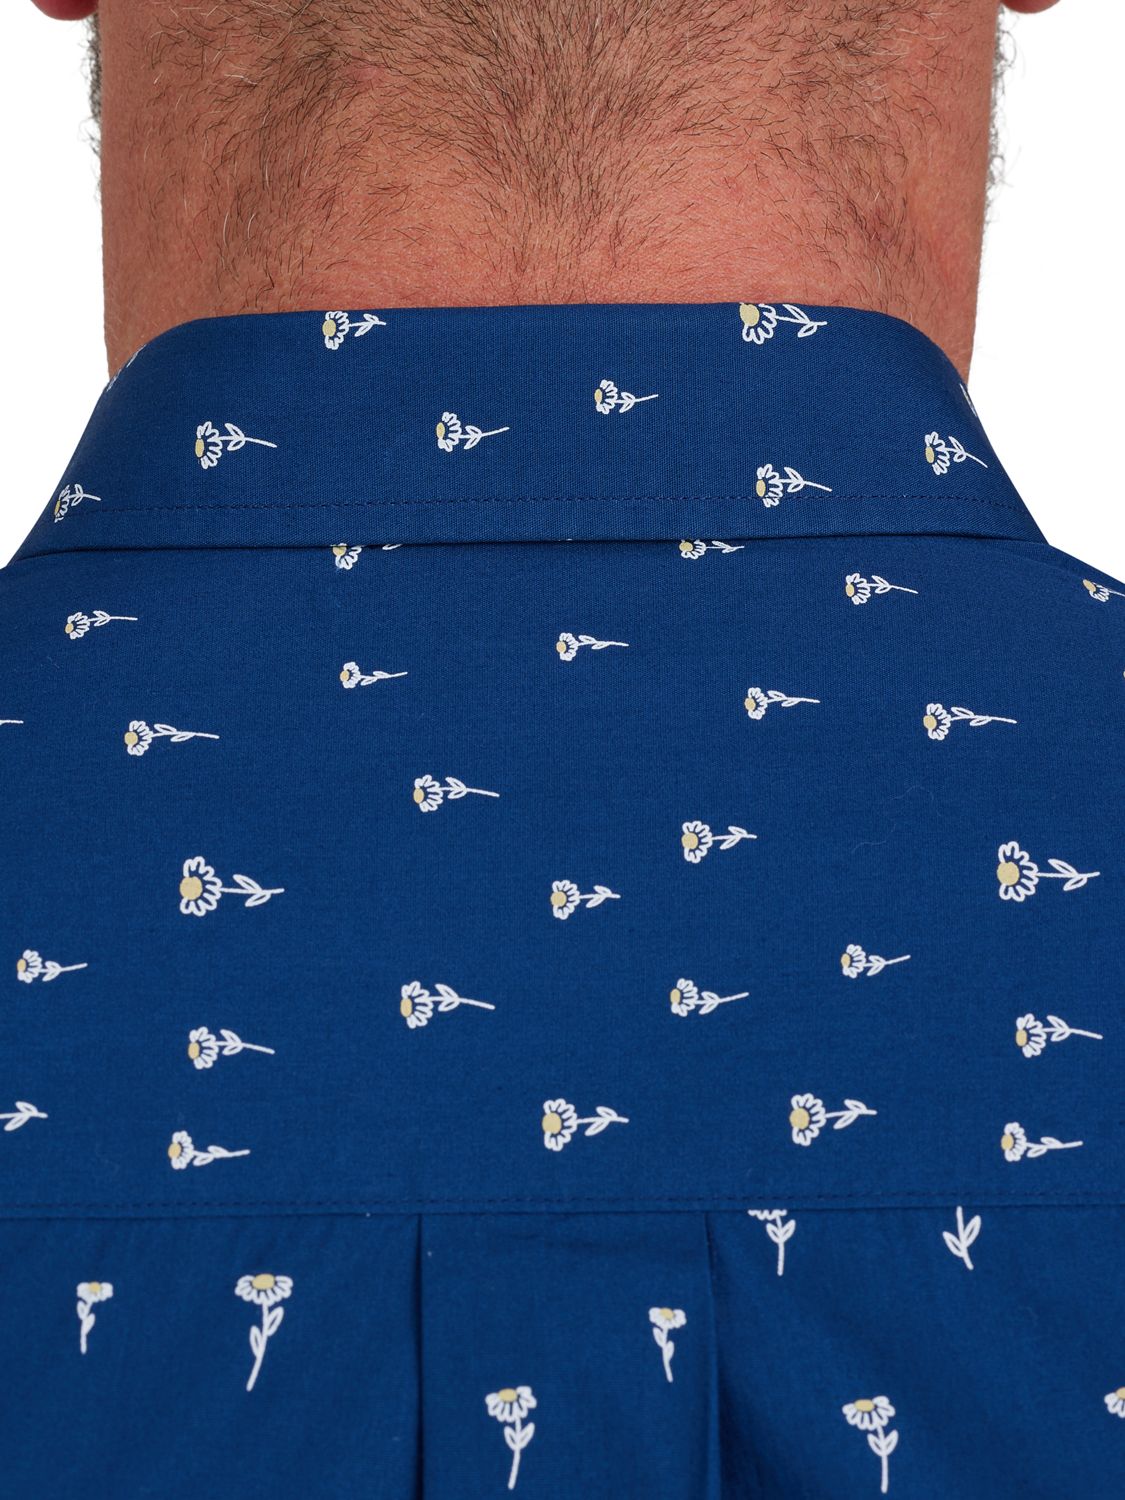 Raging Bull Short Sleeve Daisy Print Poplin Shirt, Navy, S